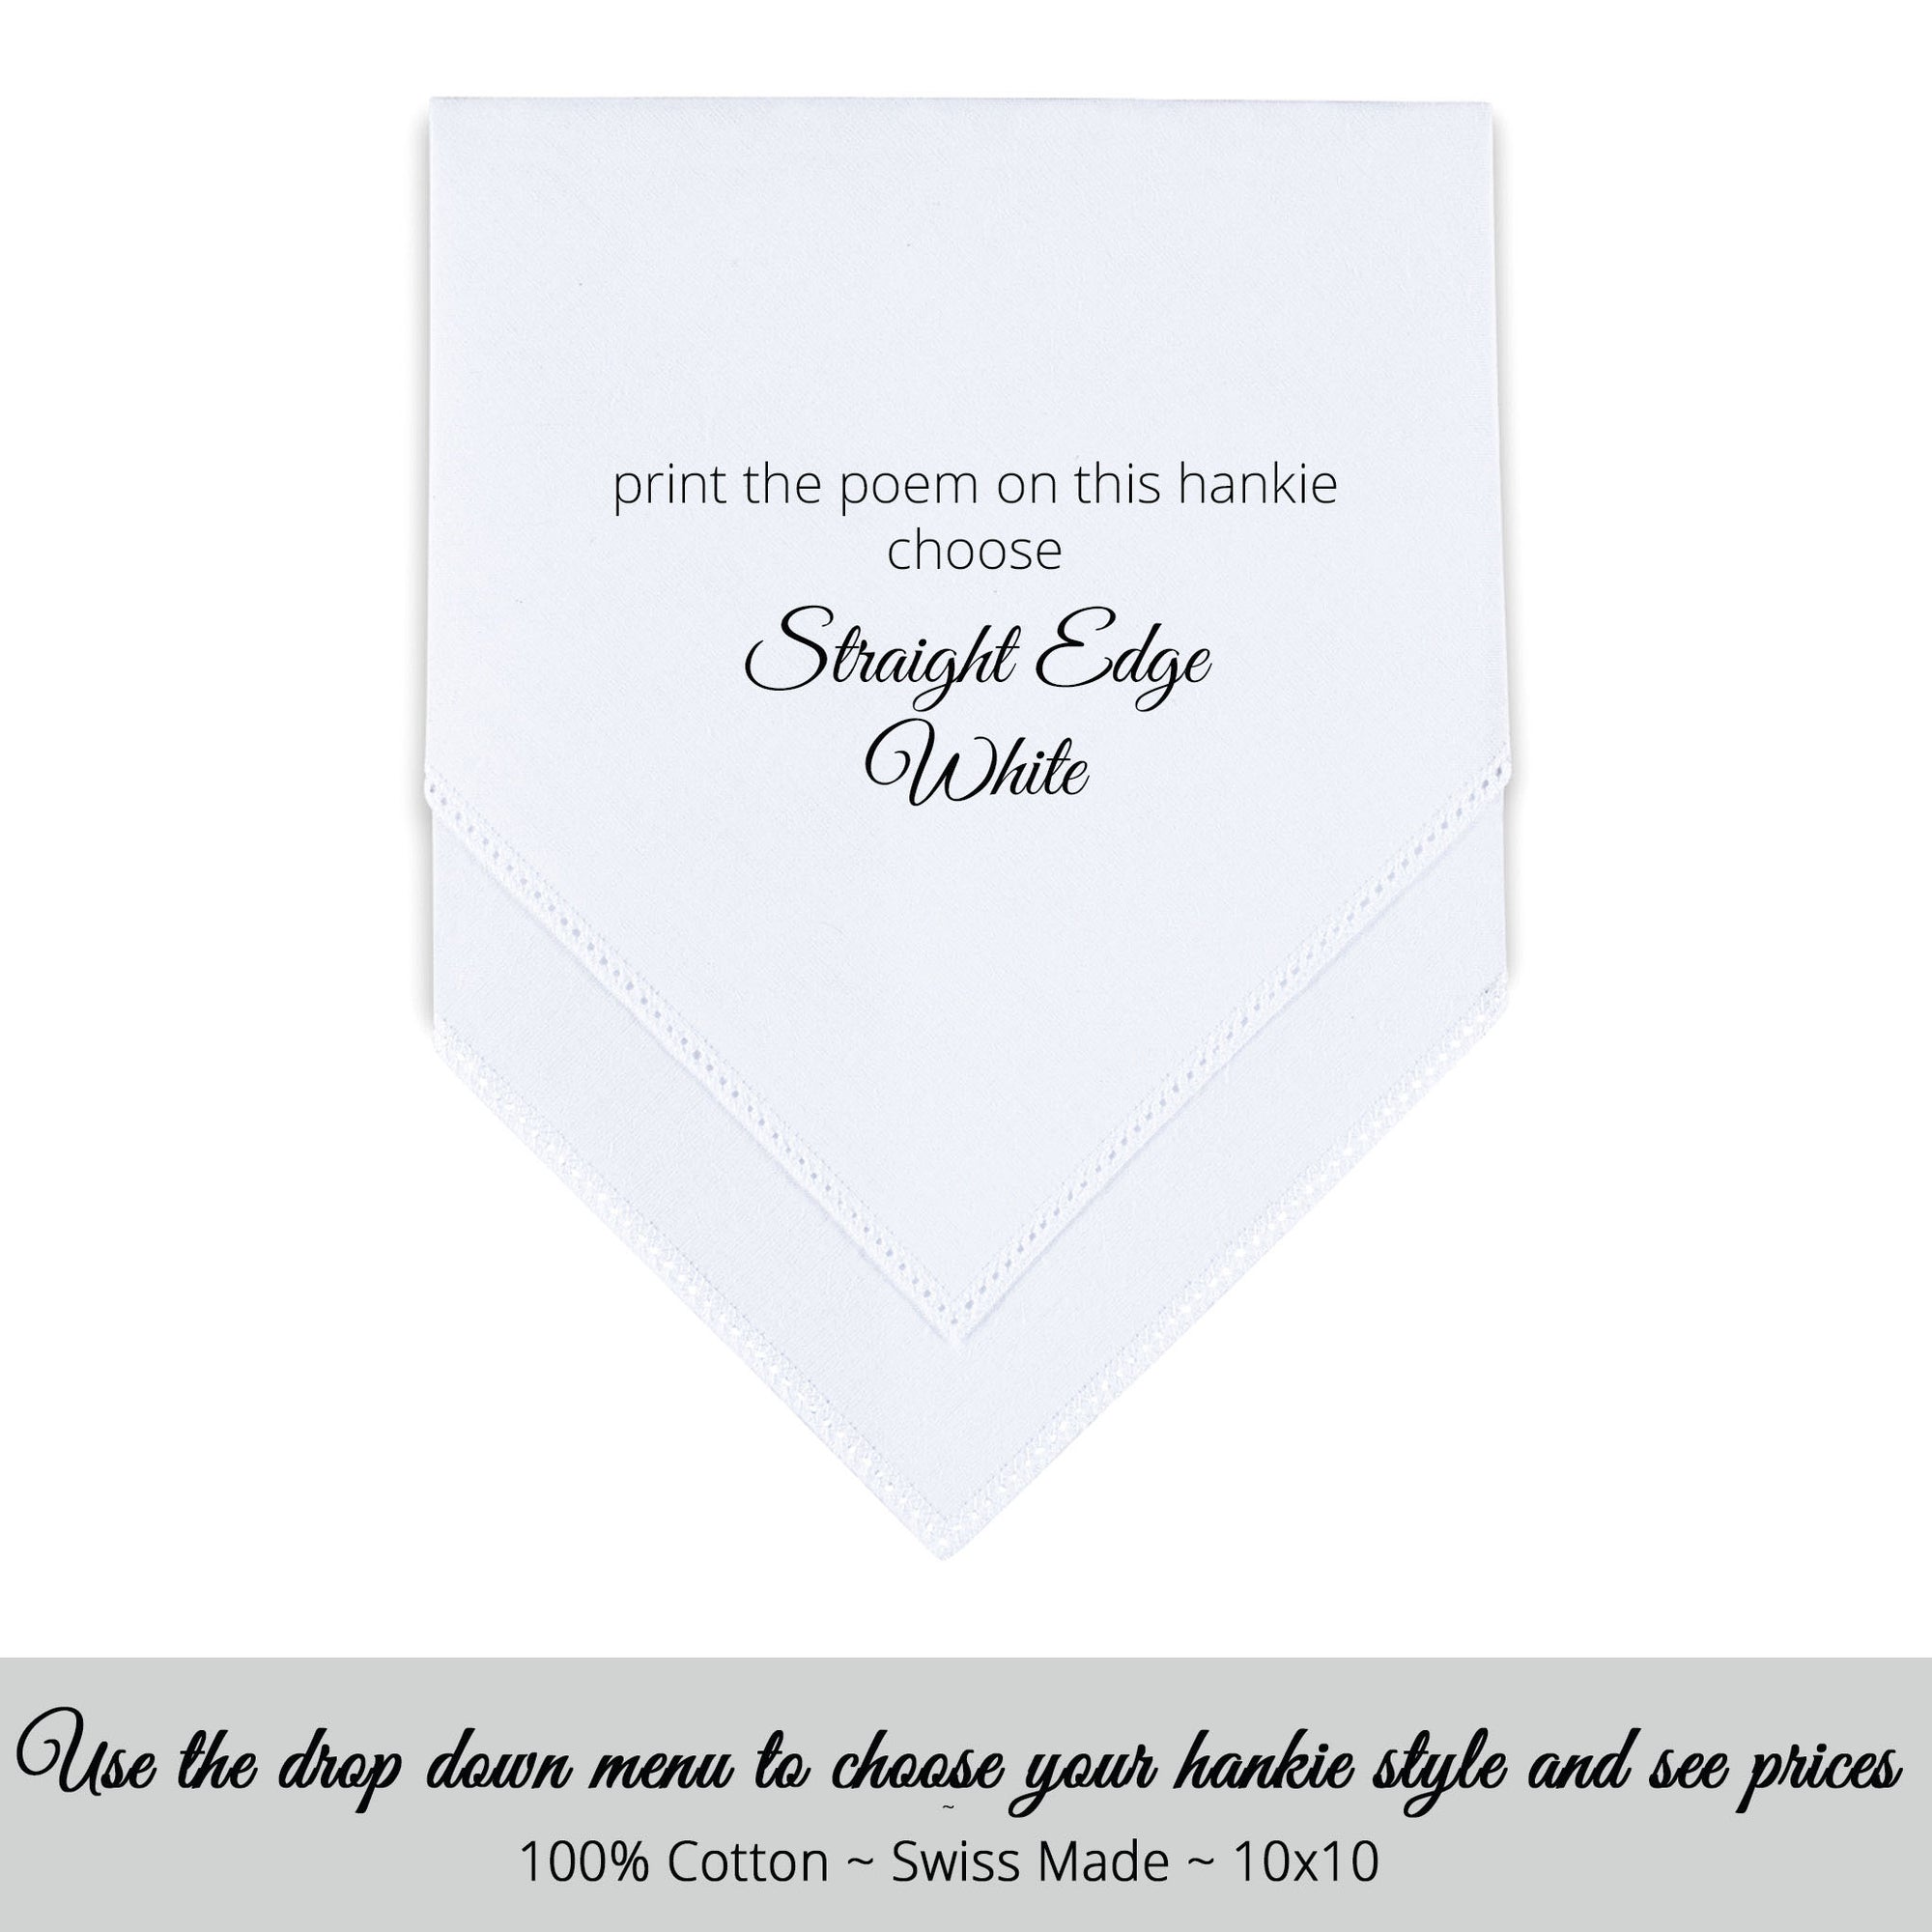 Straight edge white personalized wedding handkerchief 